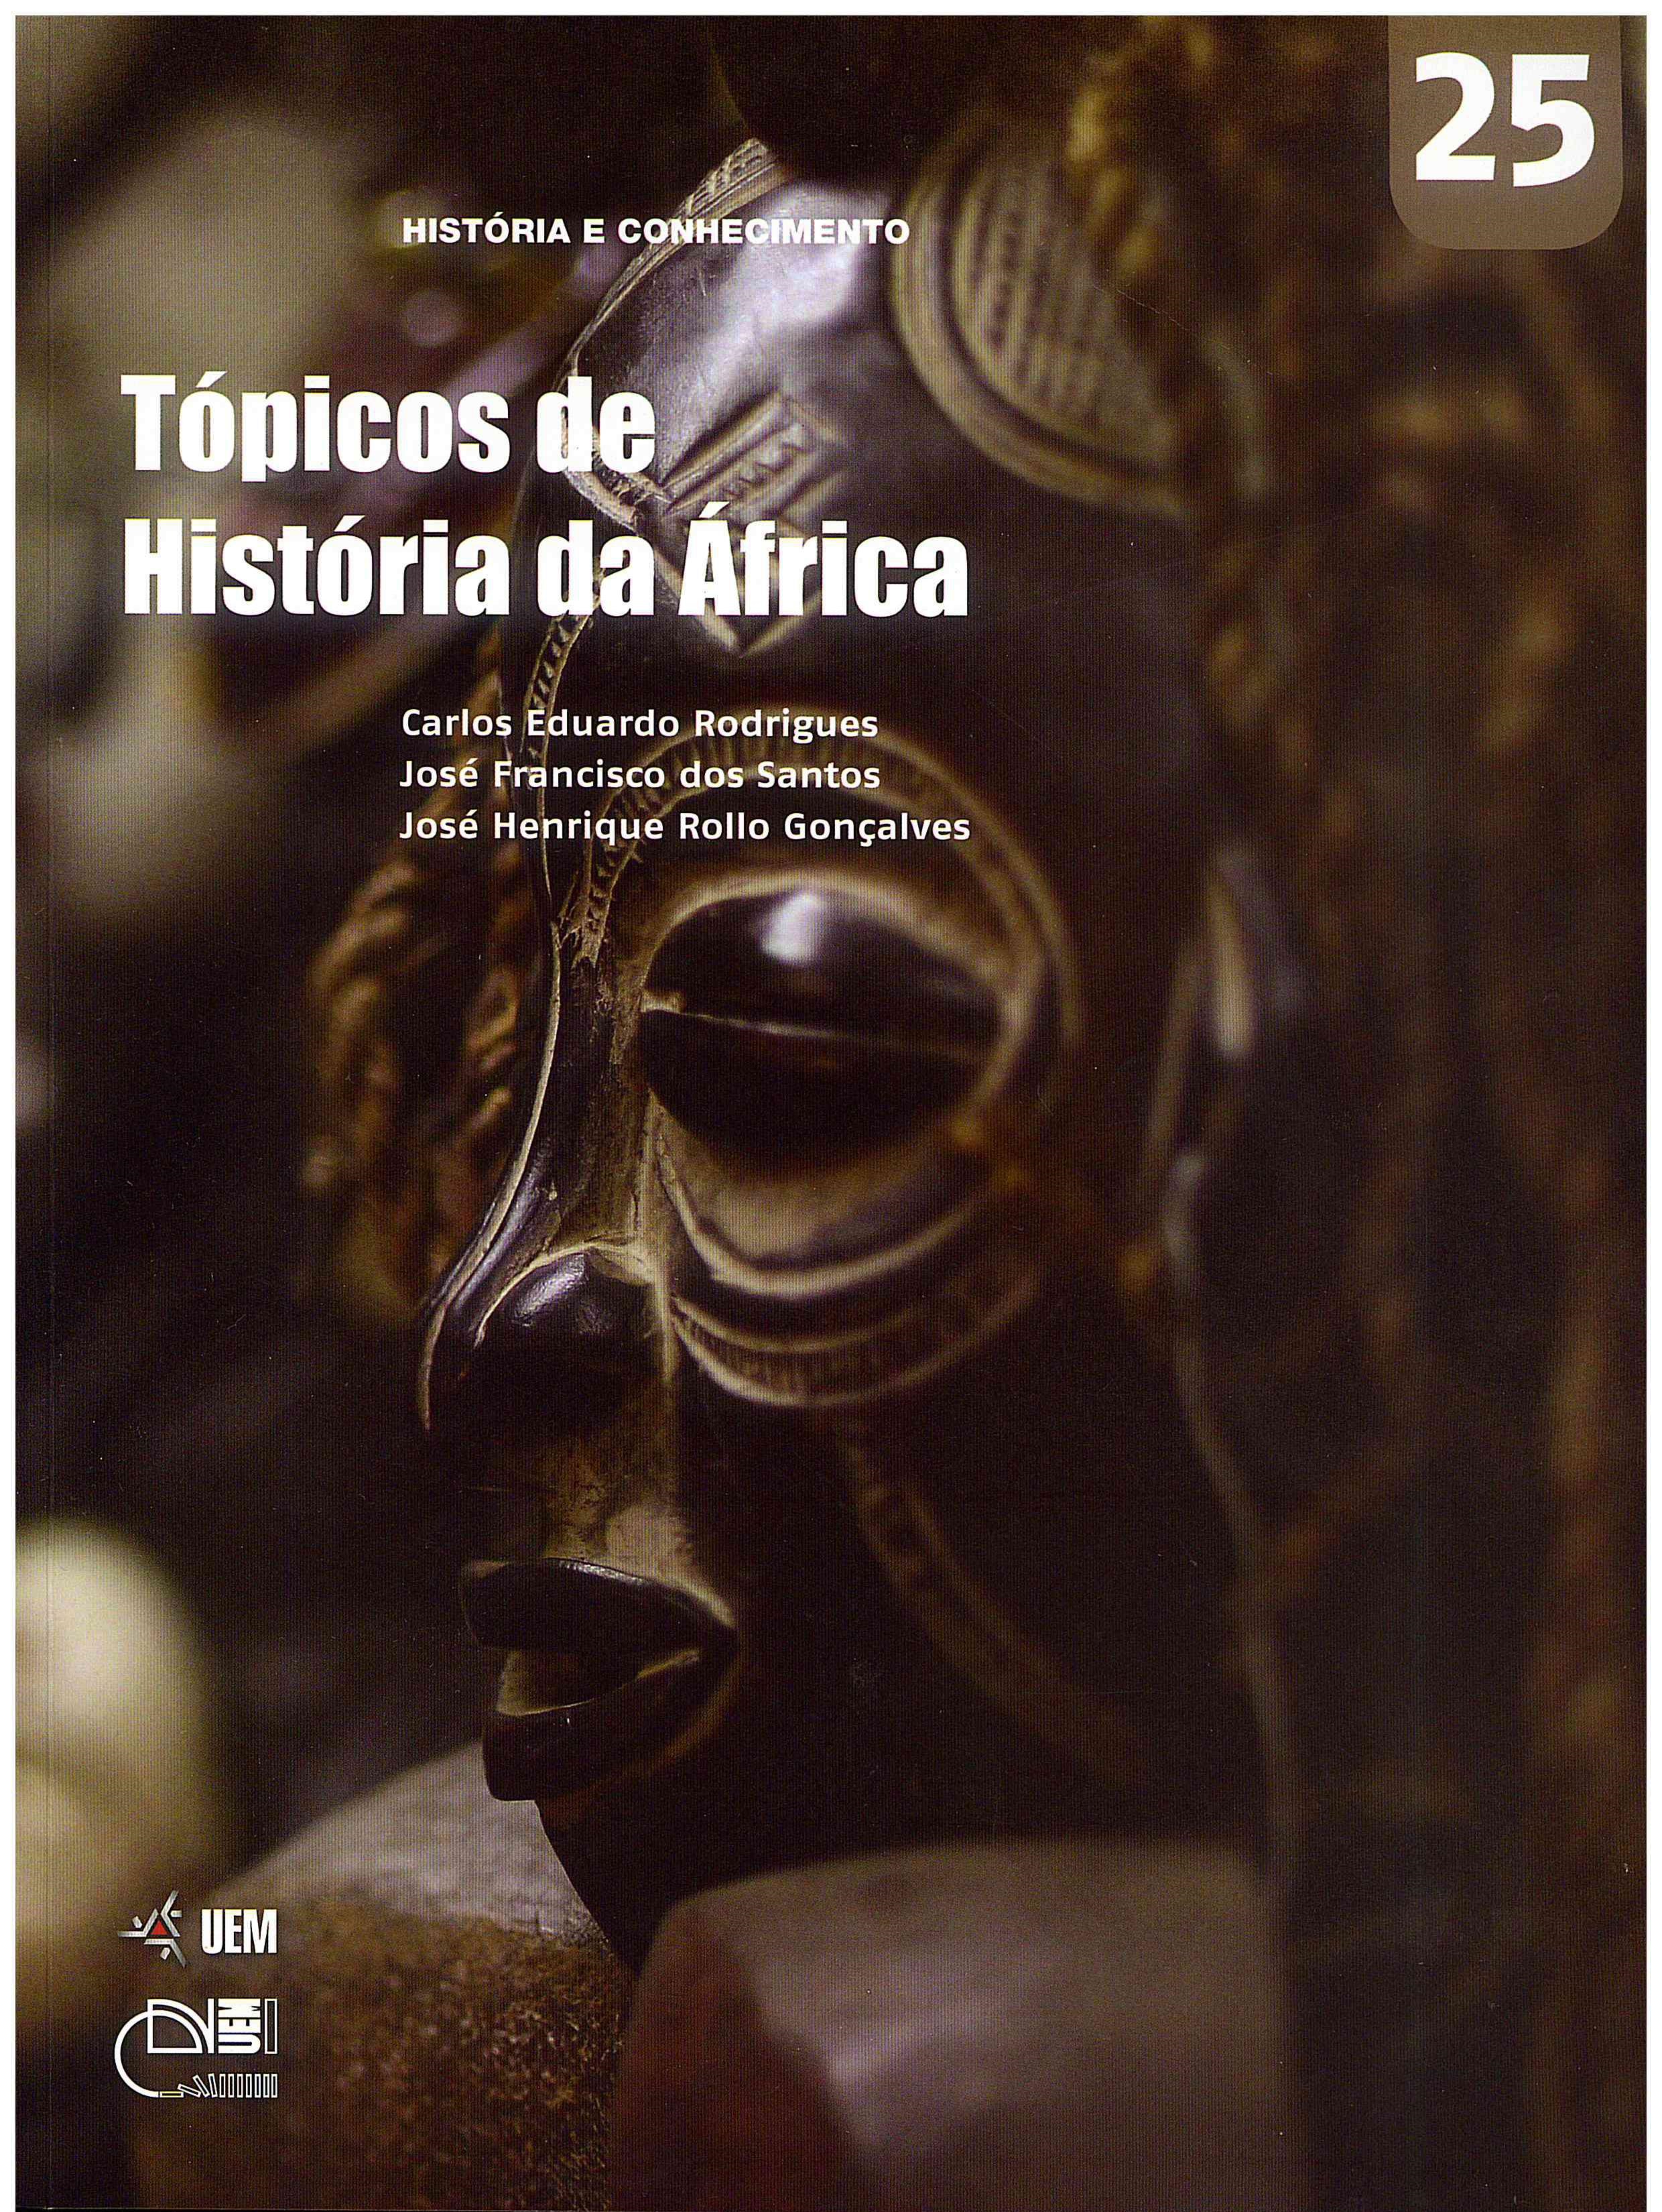 RODRIGUES, C. E.; SANTOS, J. F.; GONÇALVES. J. H. R. Tópicos de História da África